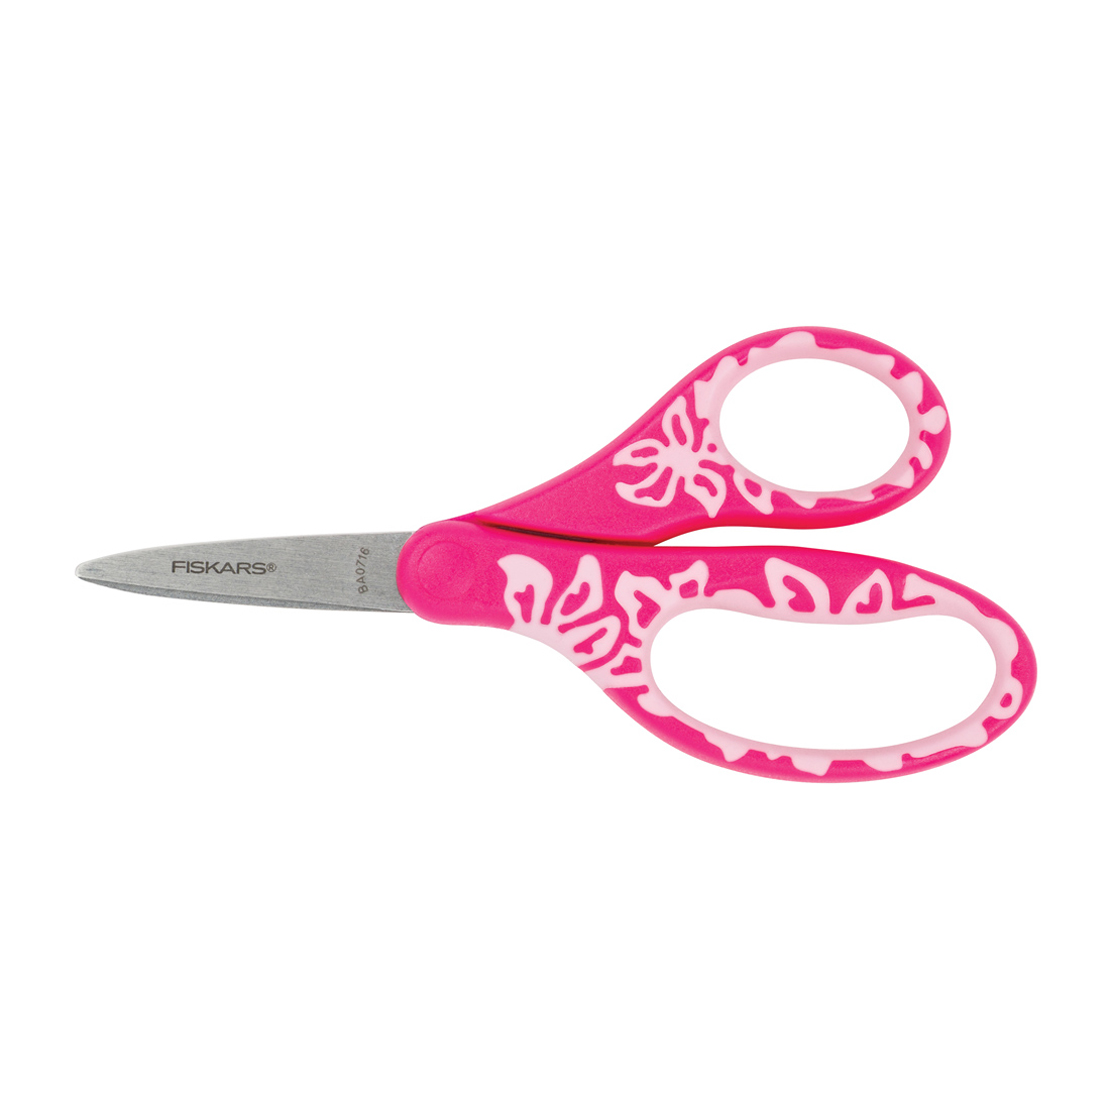 https://www.fiskars.com.au/var/fiskars_main/storage/images/frontpage/products/scissors/softgrip-r-left-handed-pointed-tip-kids-scissors-5-pink/5164550-1-eng-AU/softgrip-r-left-handed-pointed-tip-kids-scissors-5-pink.jpg